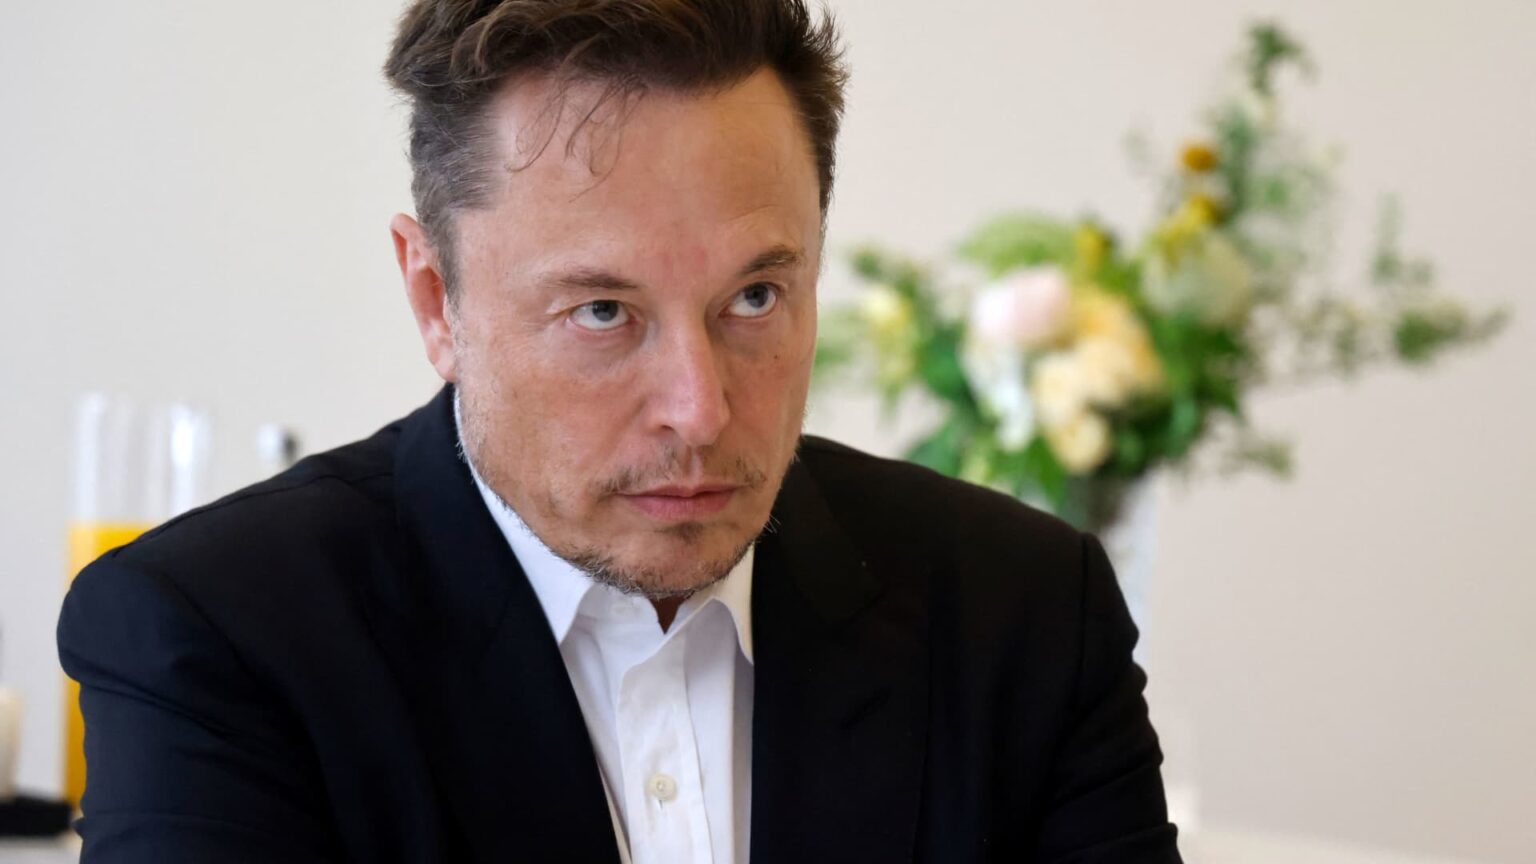 Elon Musk is subpoenaed in Jeffrey Epstein lawsuit against JPMorgan